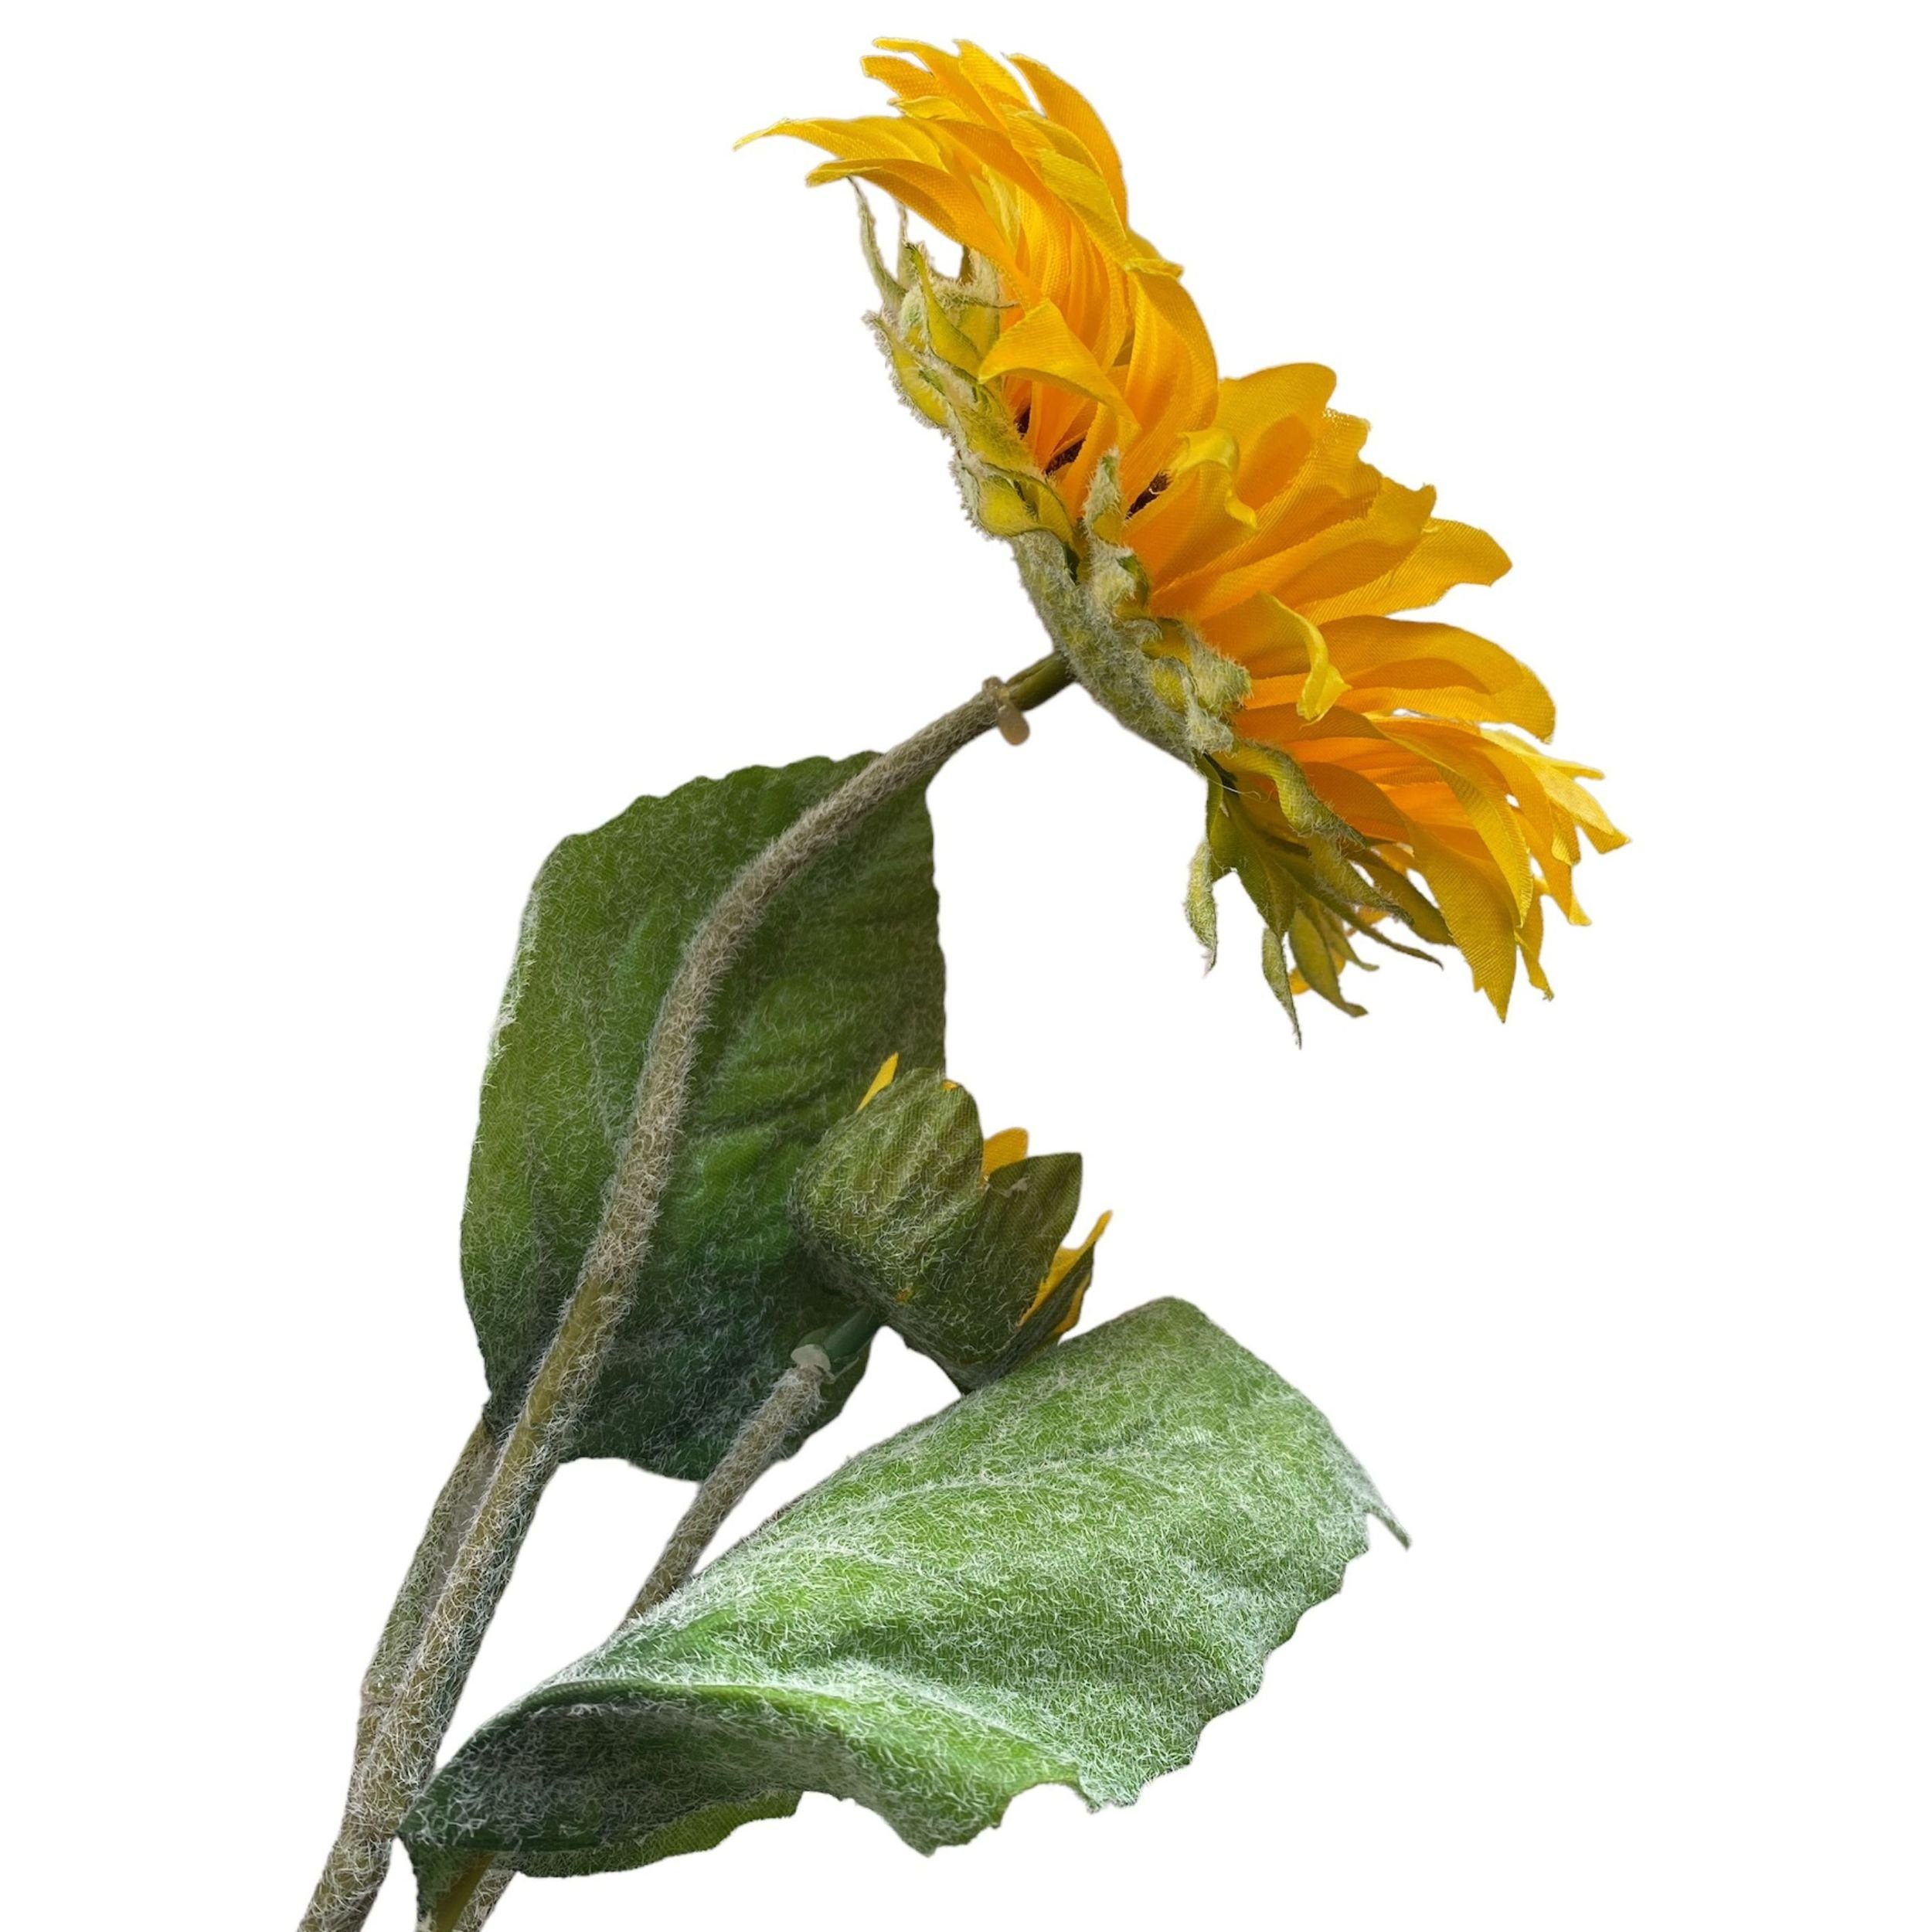 41 Geflockt Gelb Kunstblume Künstliche Sonnenblume cm, DekoTown Grün